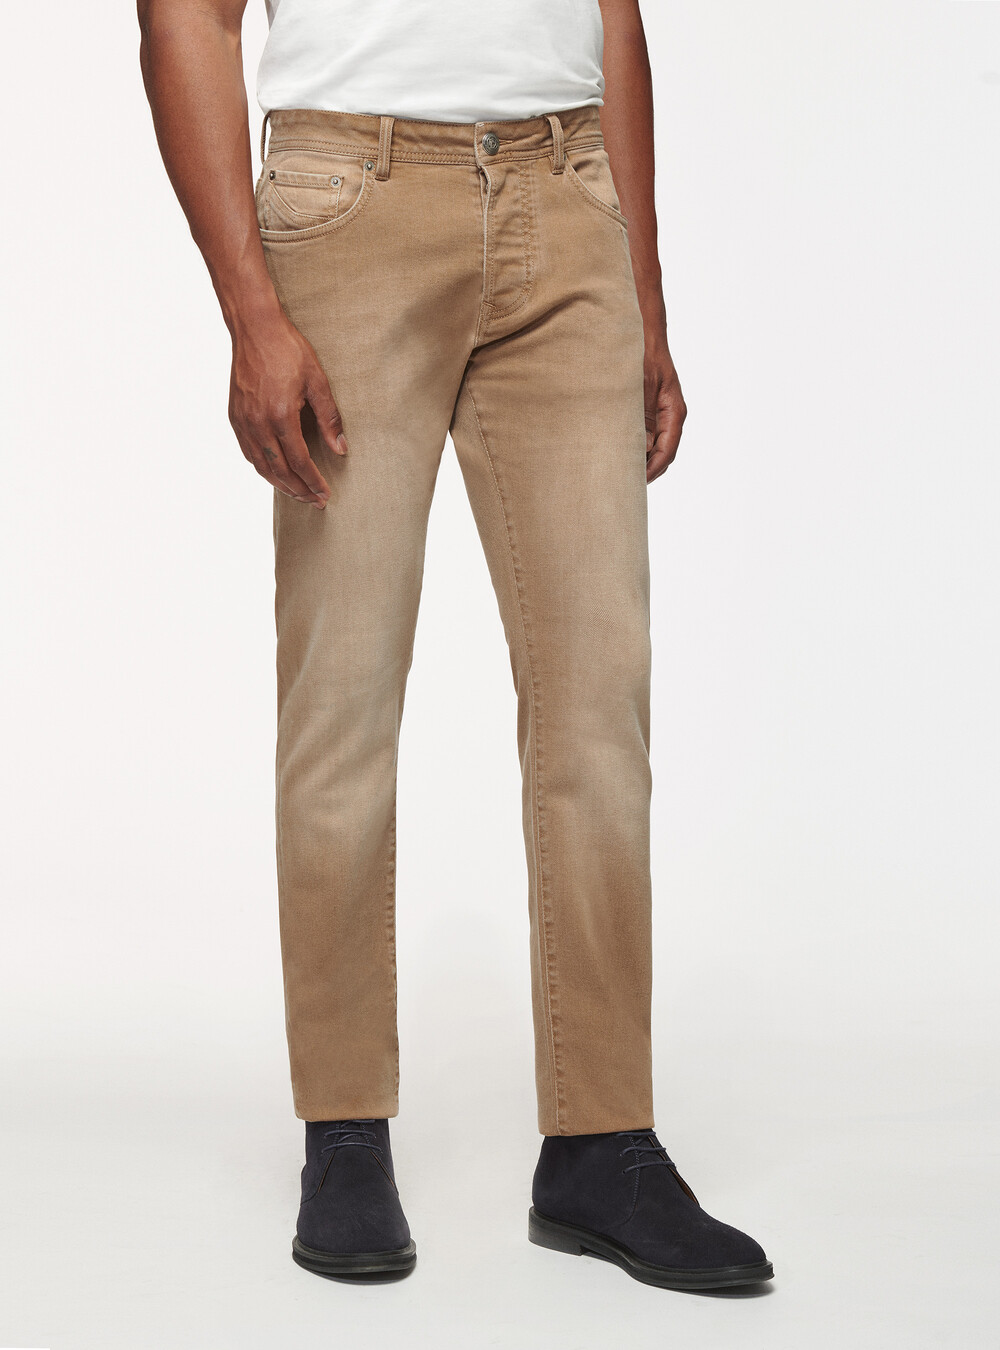 Coloured stretch cotton trousers | GutteridgeUS | Men's Jeans